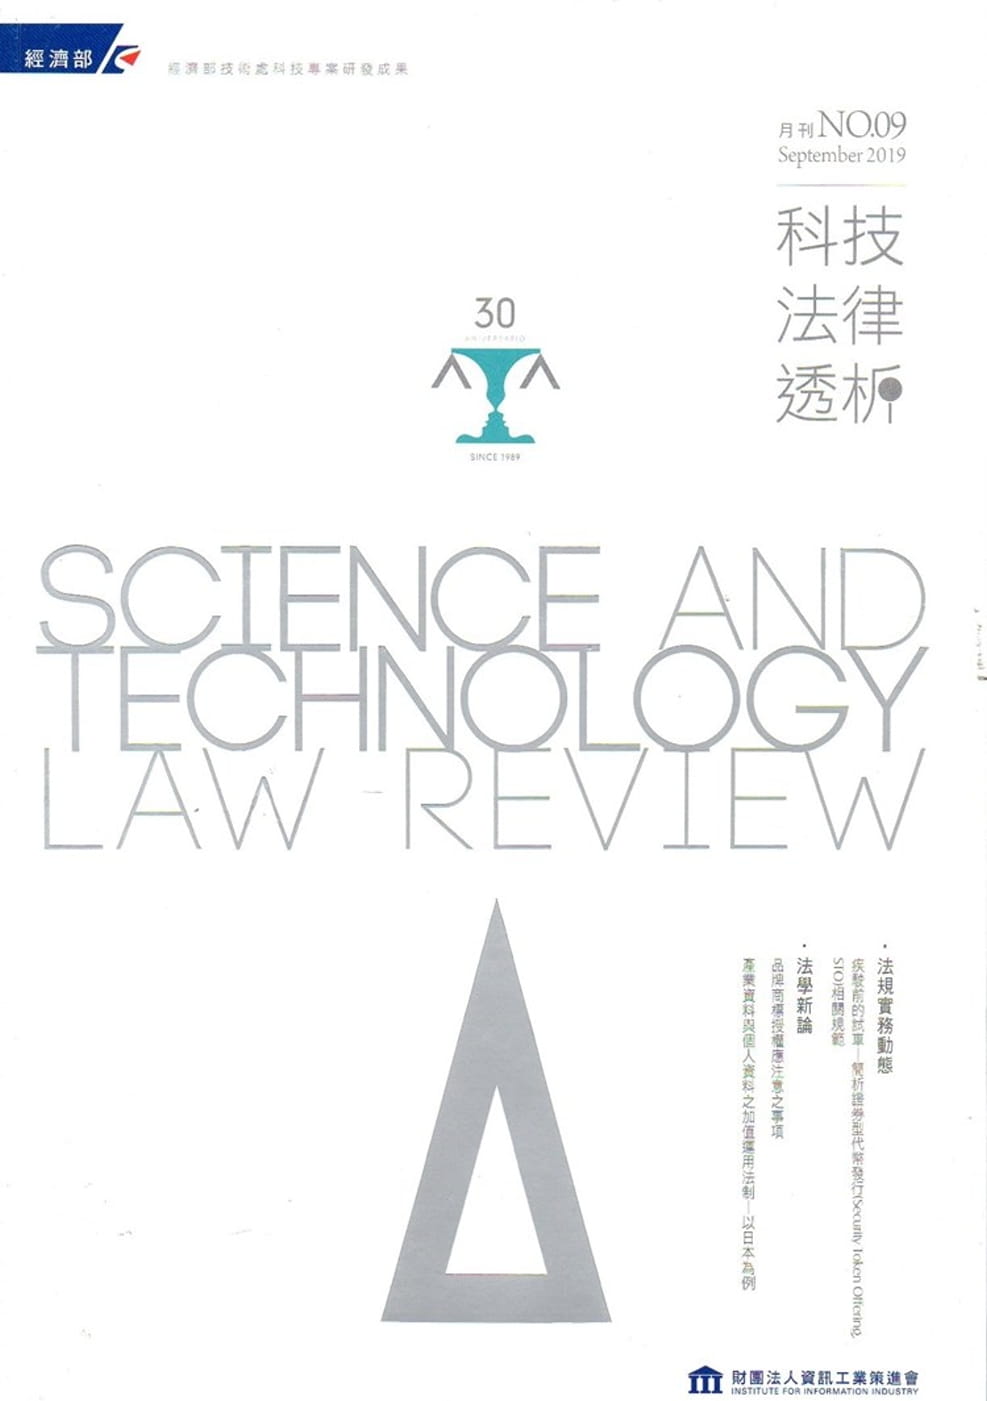 科技法律透析月刊第31卷第09期